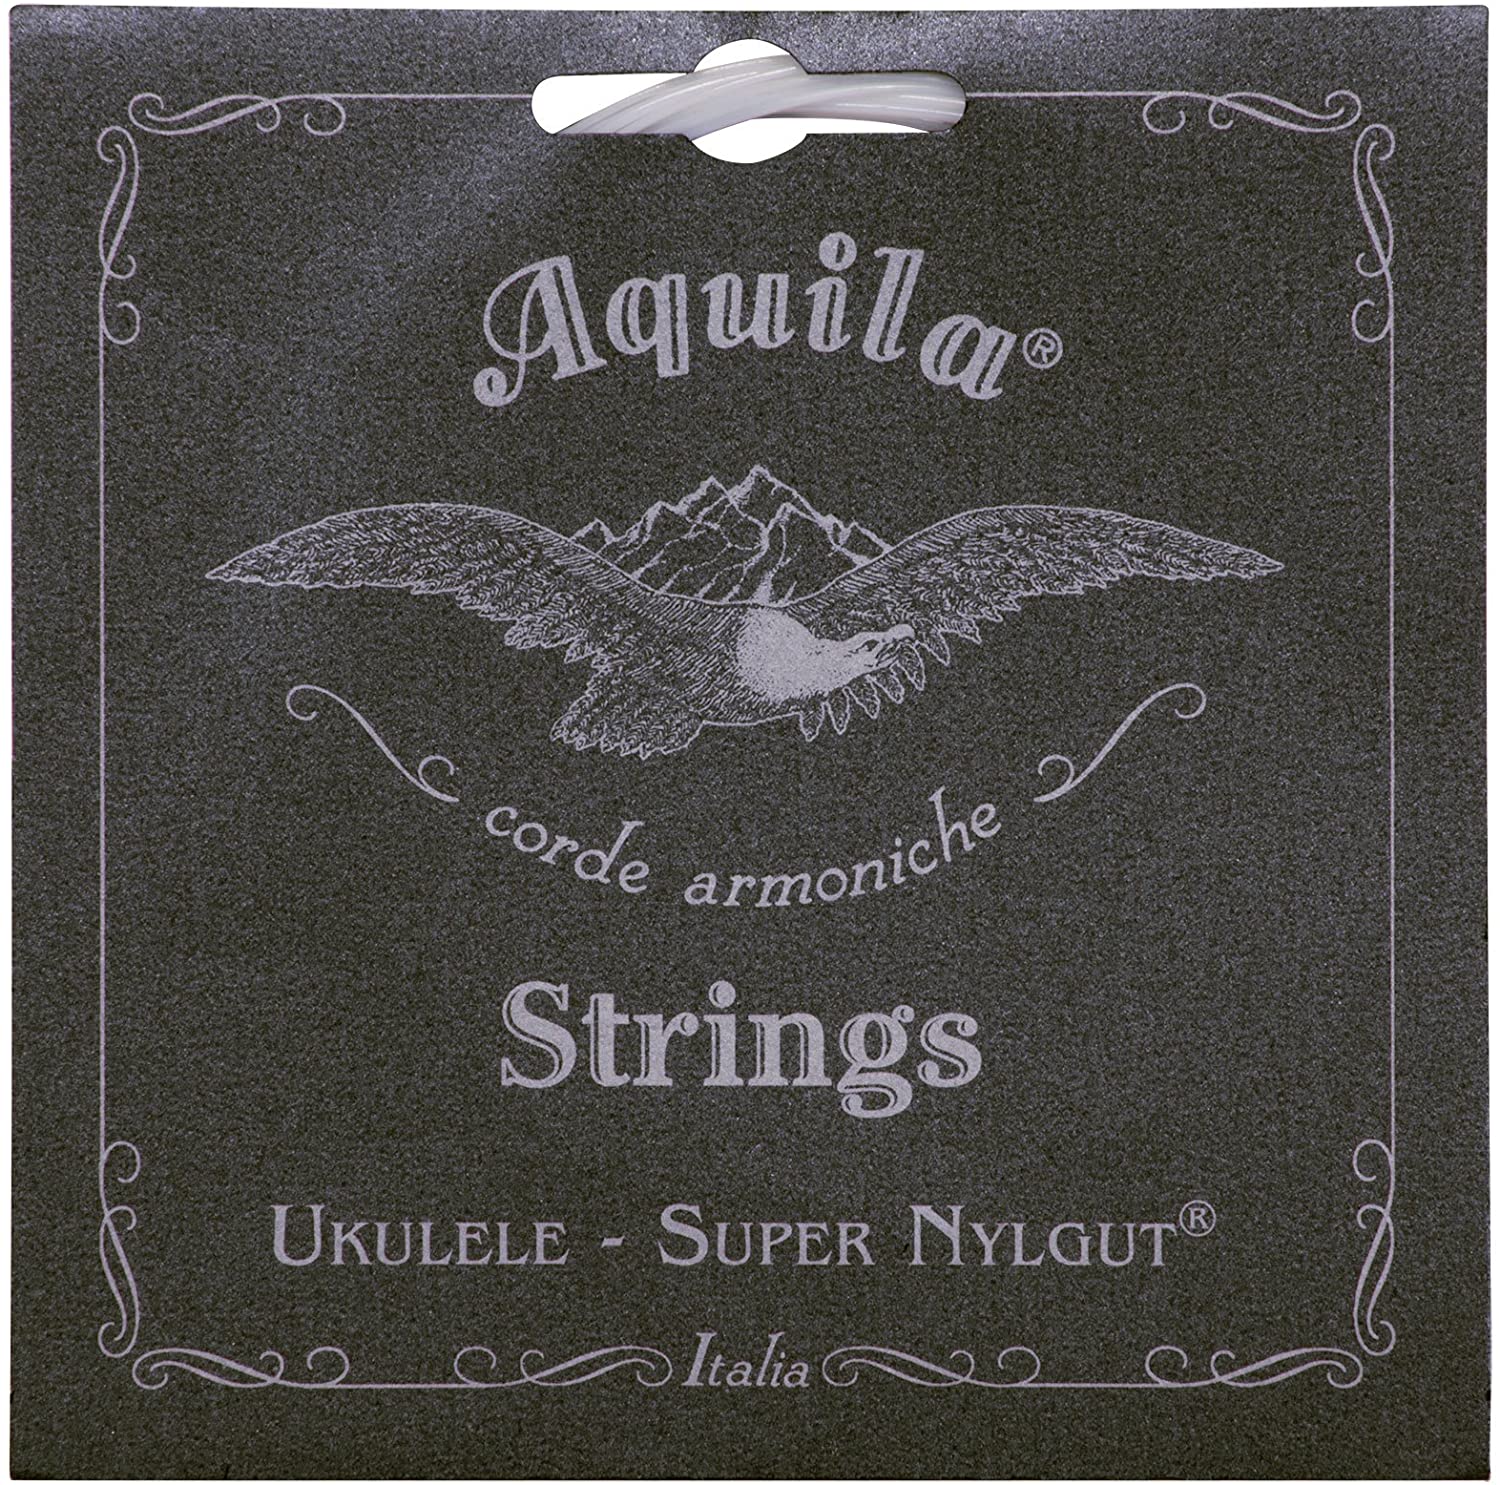 Aquila 131U Super Nylgut 8 String Baritone Ukulele Strings dDgGbbee TUNING